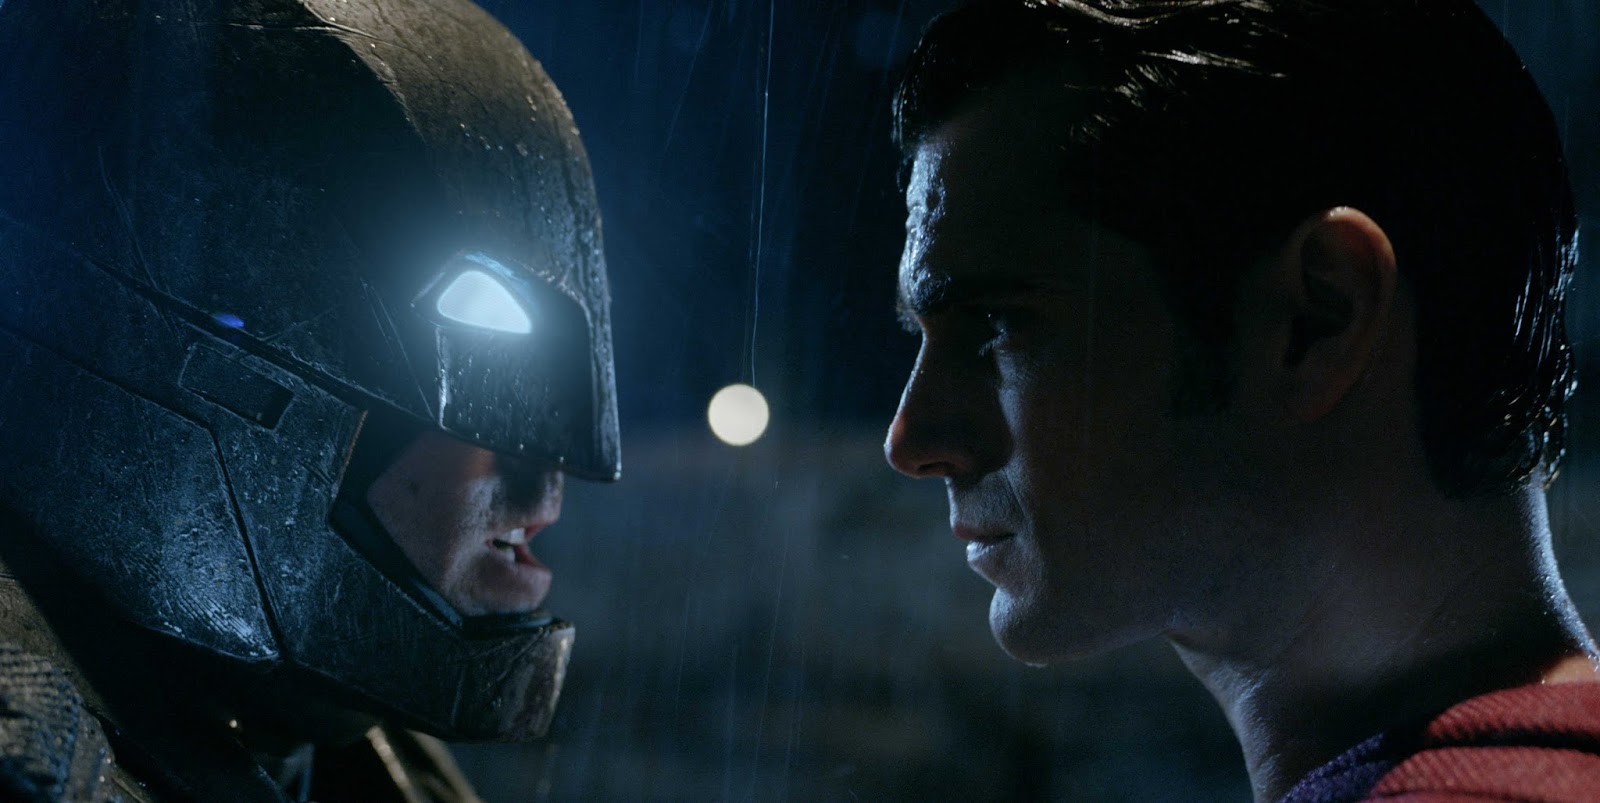 EL GABINETE DE CINEMAGNIFICUS: BATMAN V. SUPERMAN. DAWN OF JUSTICE de Zack  Snyder - 2016 - (